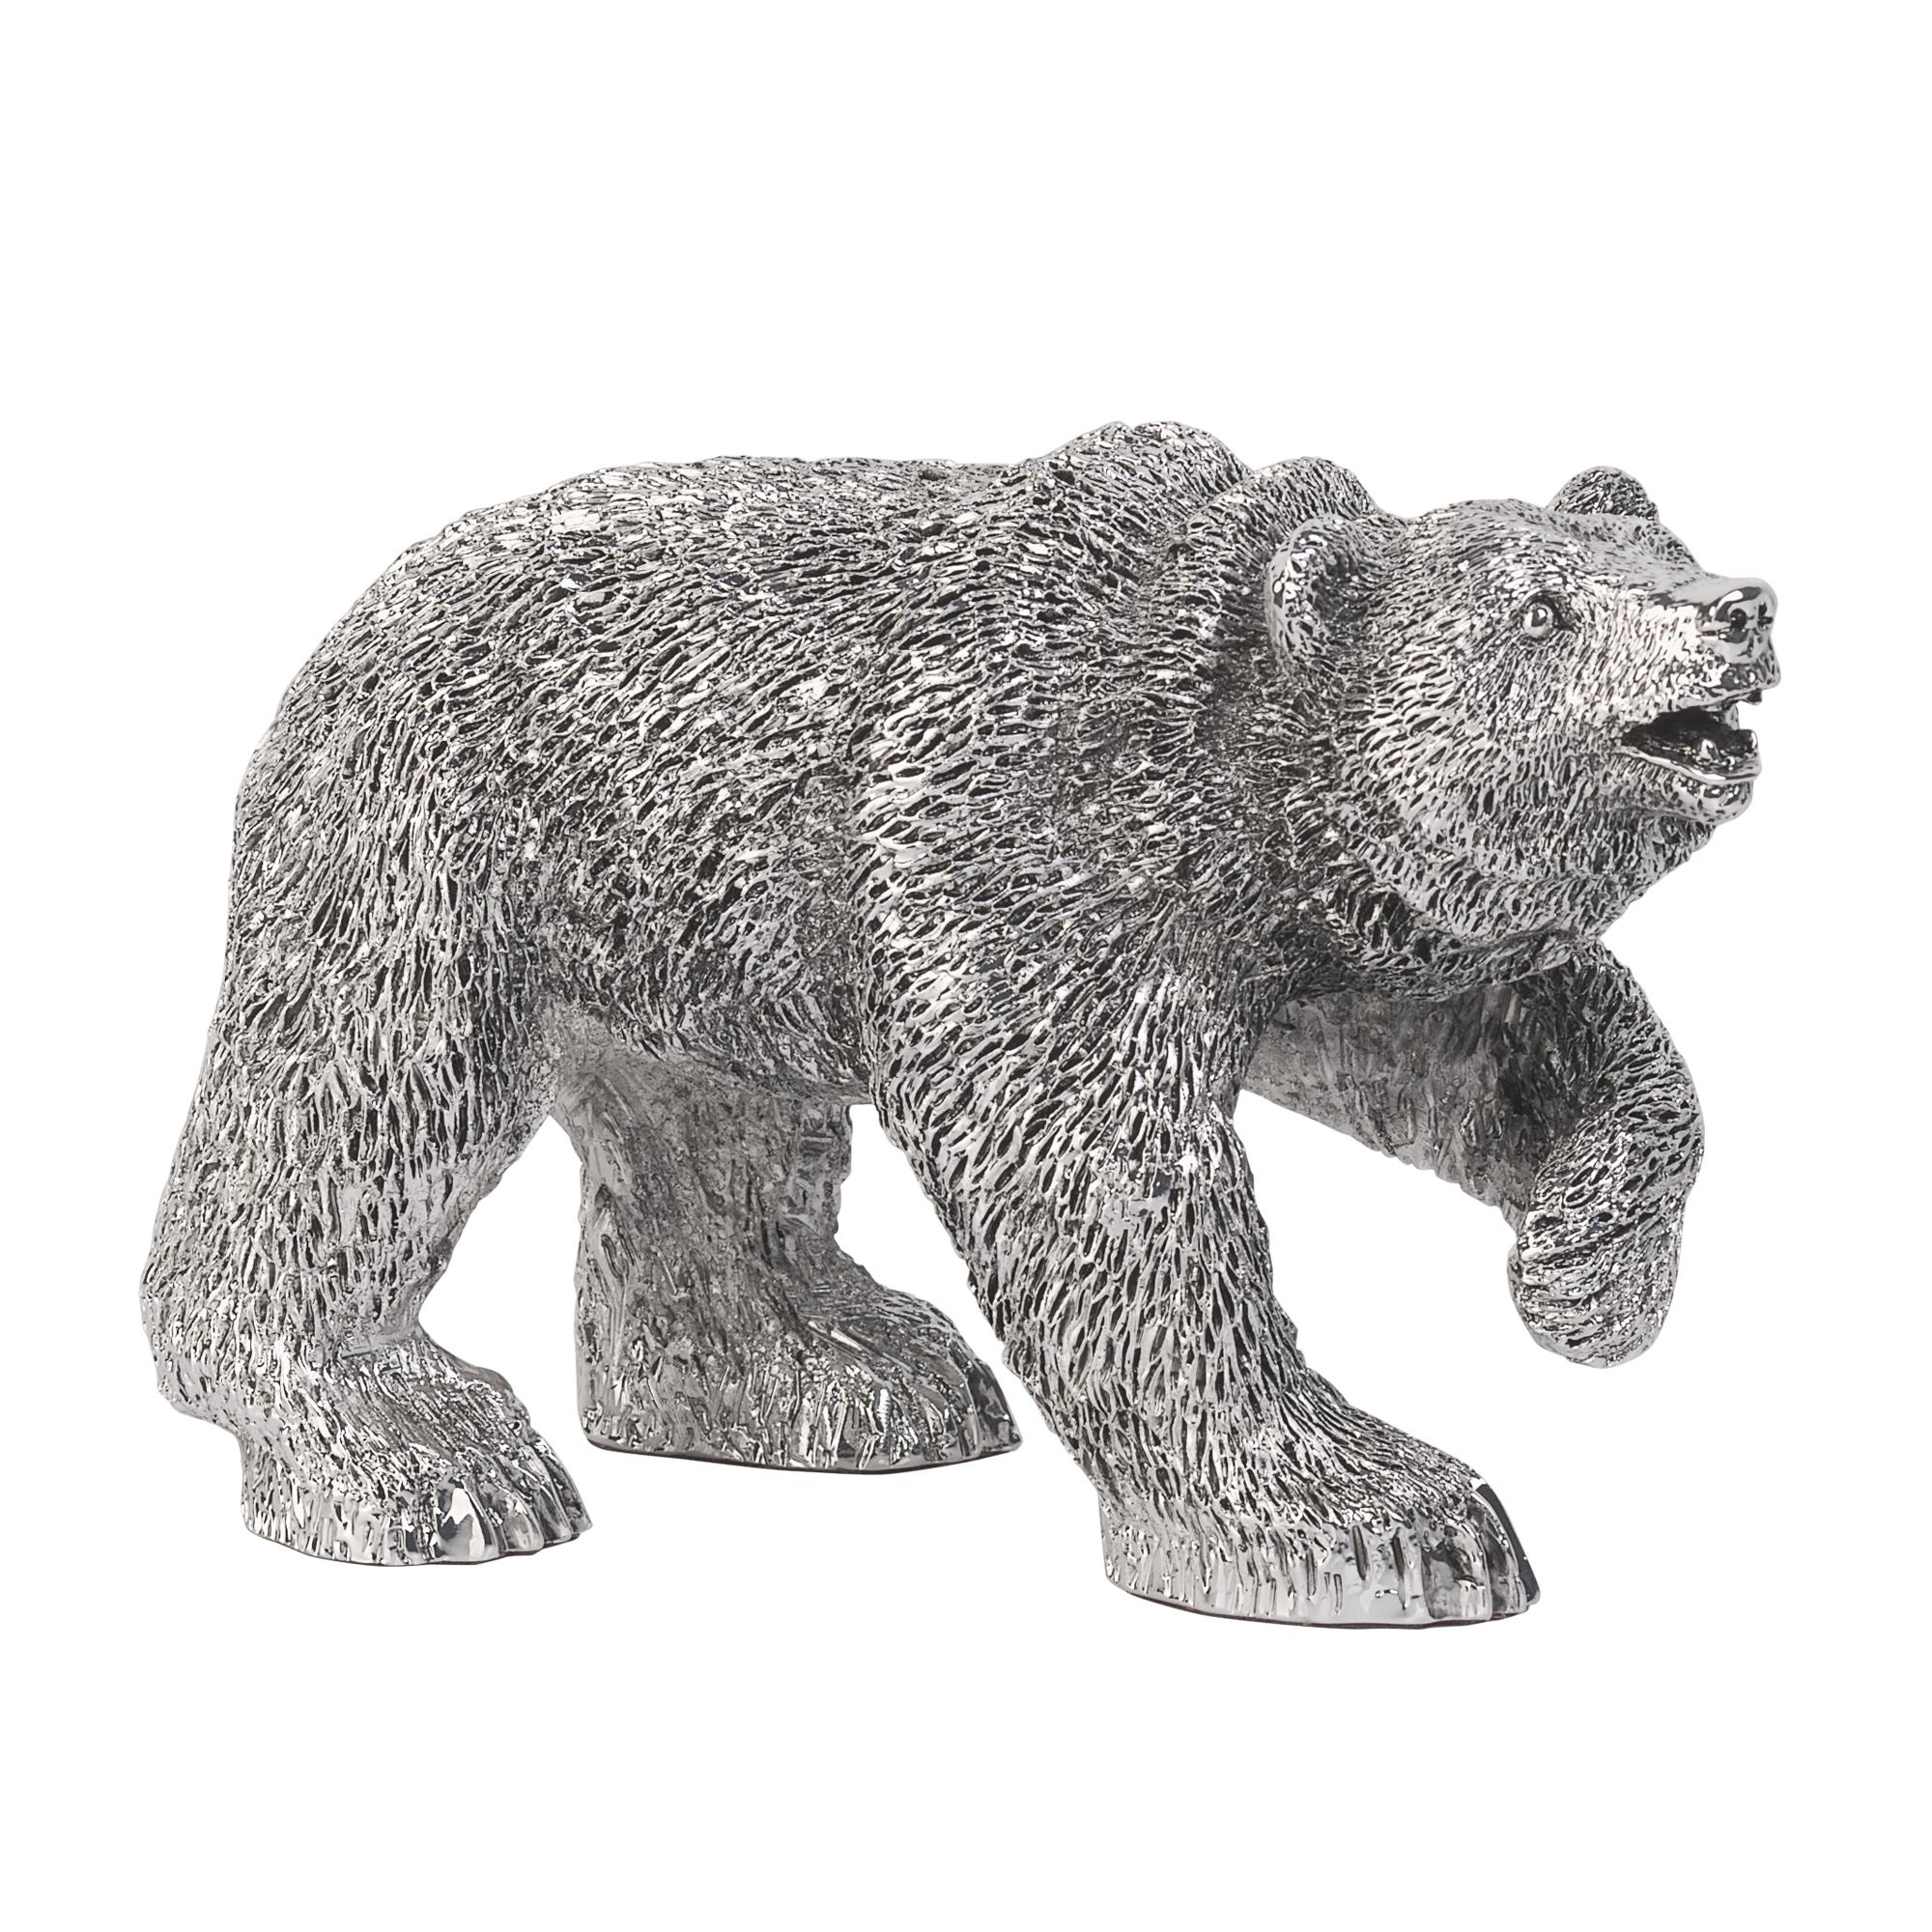 Статуэтка "Медведь", посеребрение, h 11 см, цвет серебристый